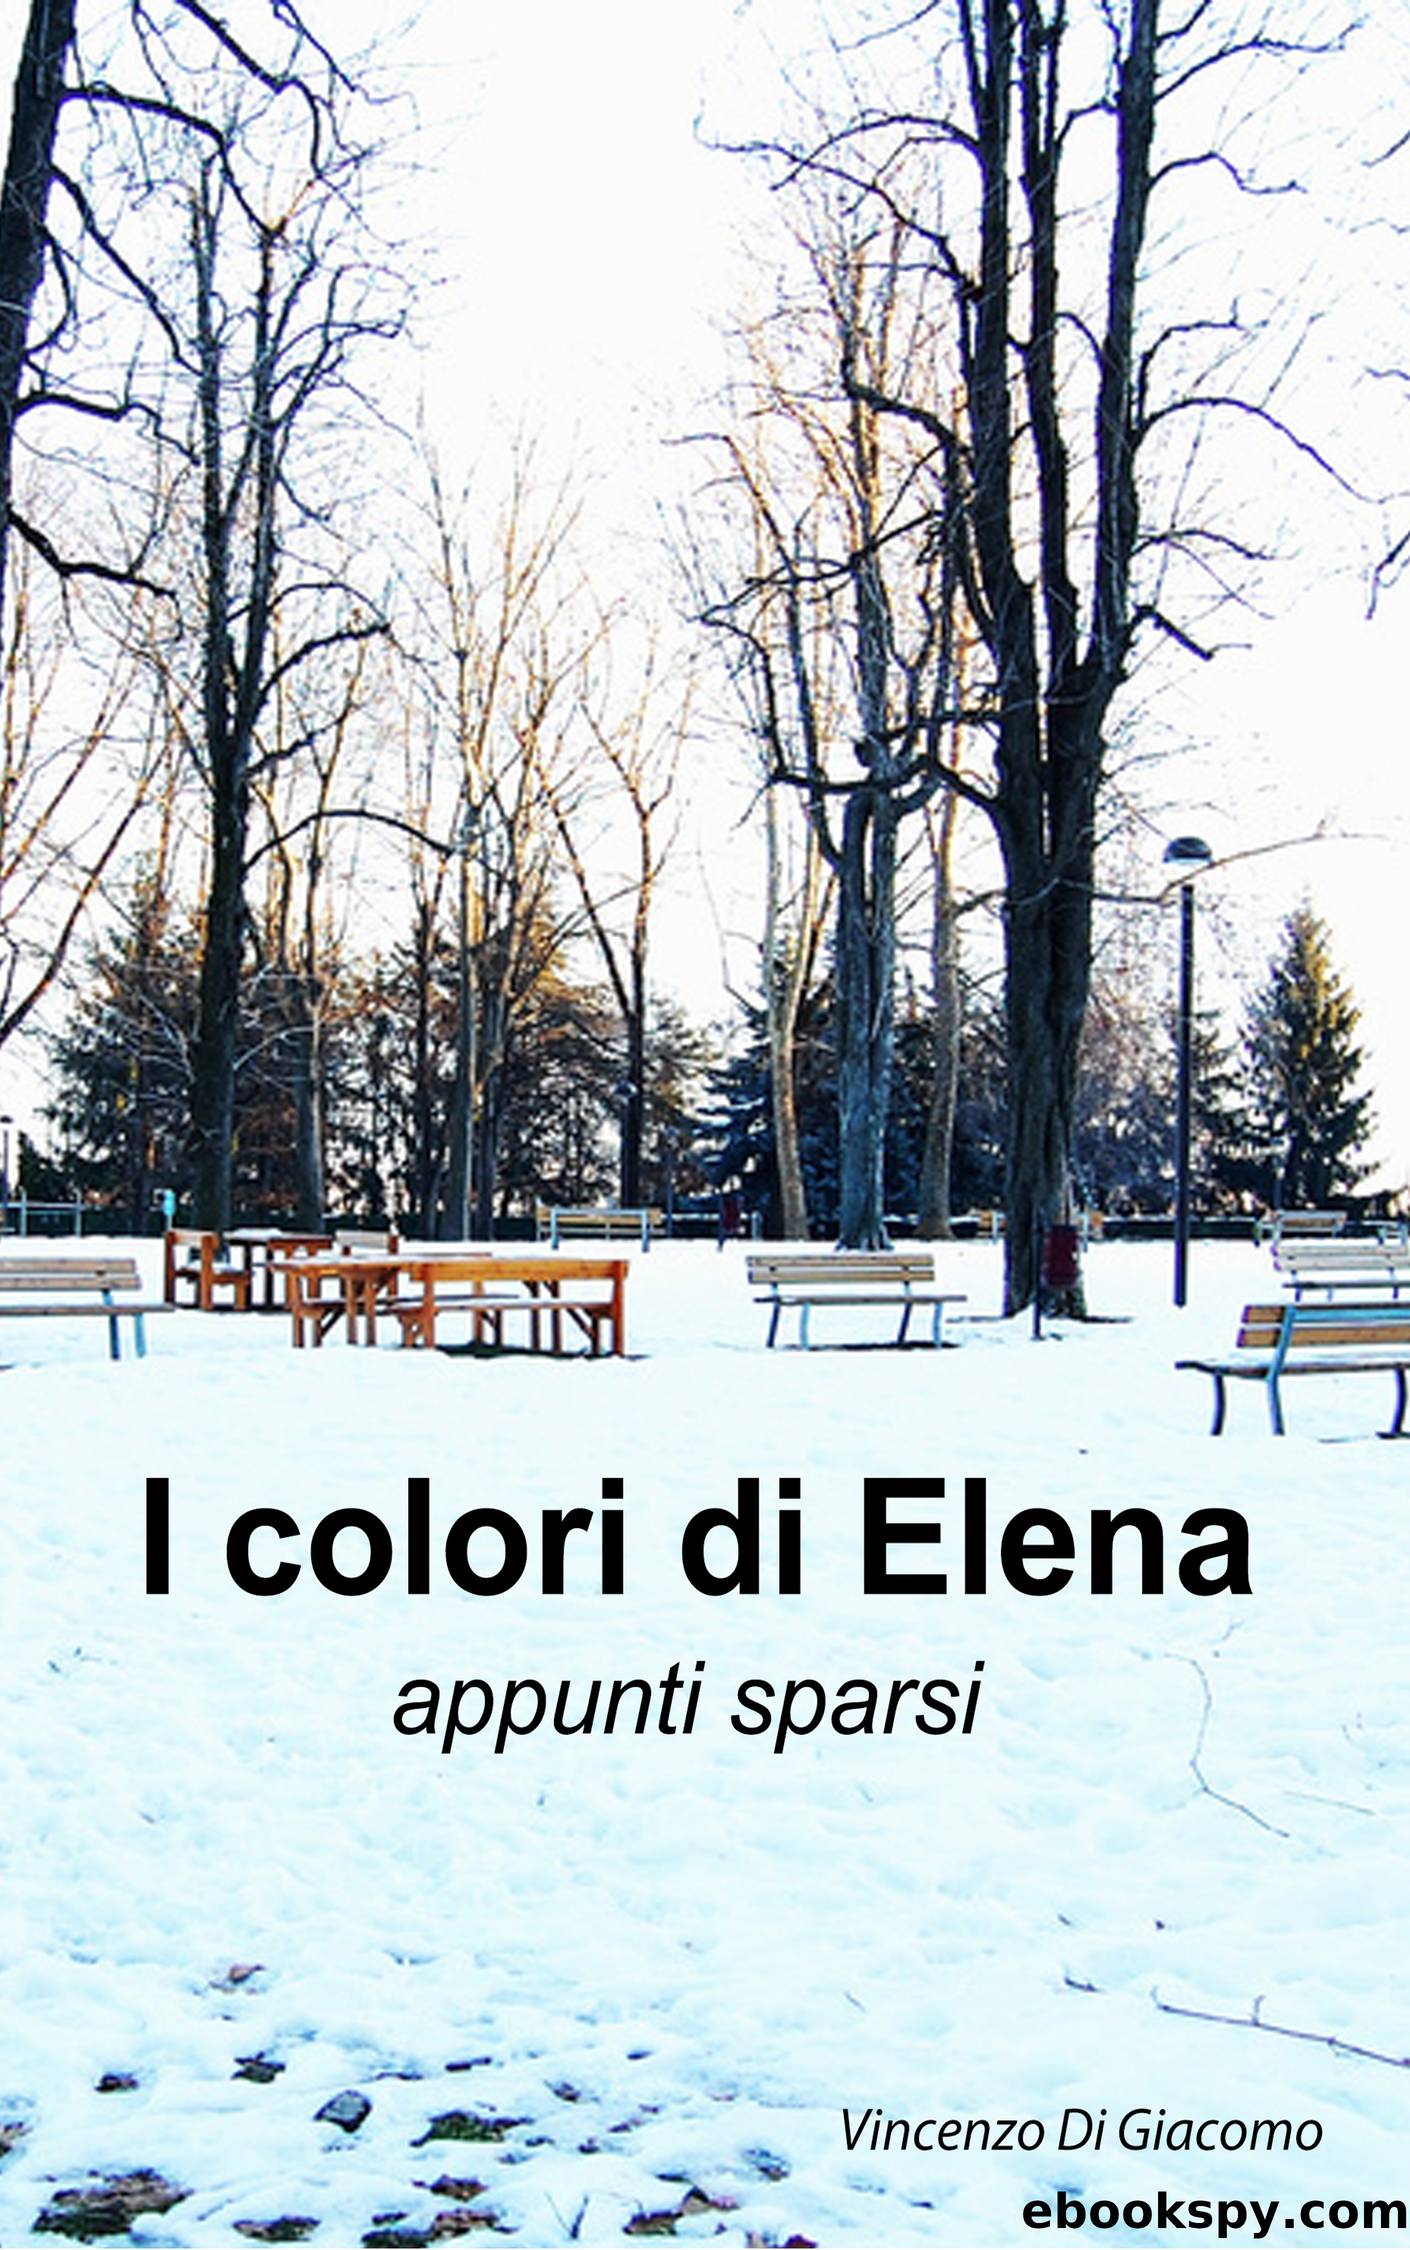 I colori di Elena by Vincenzo Di Giacomo